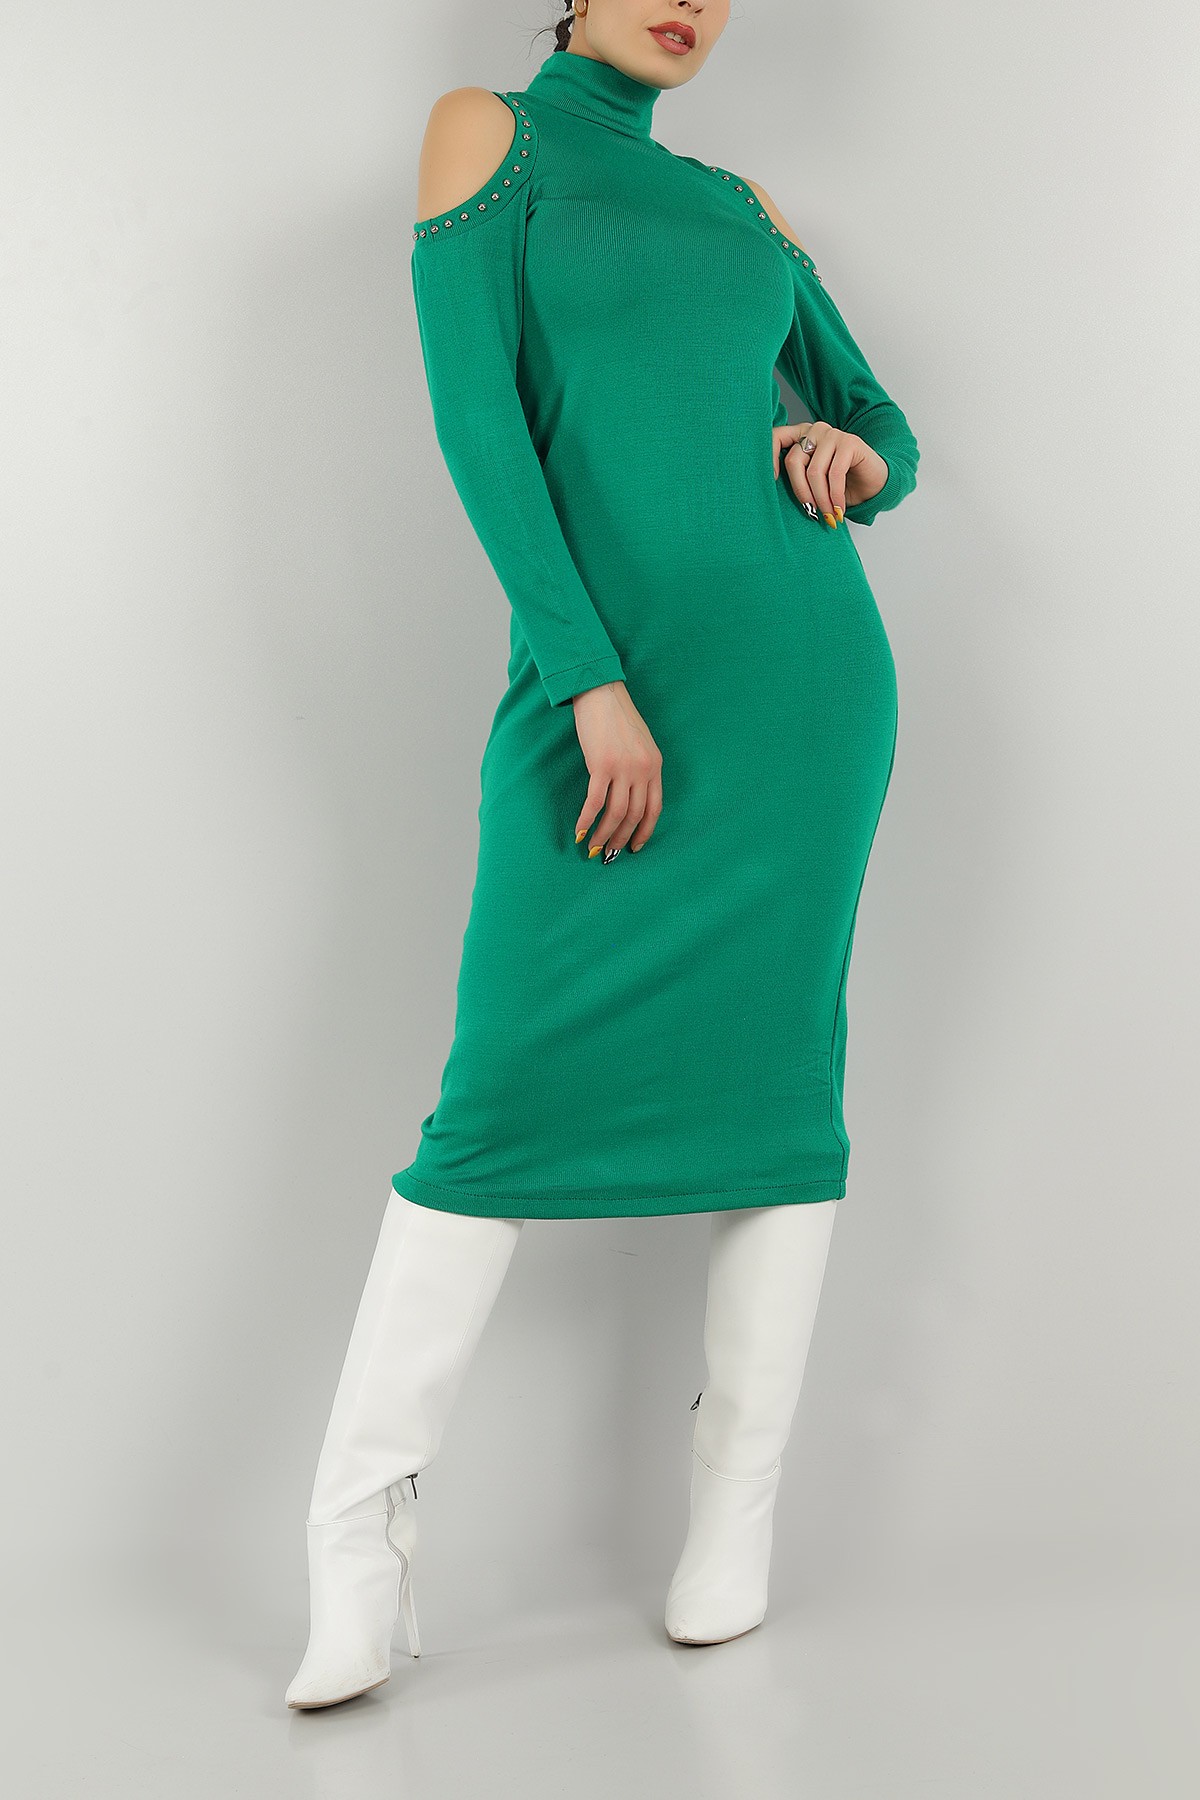 Yeşil Taşlı Tasarım Triko Elbise 146773